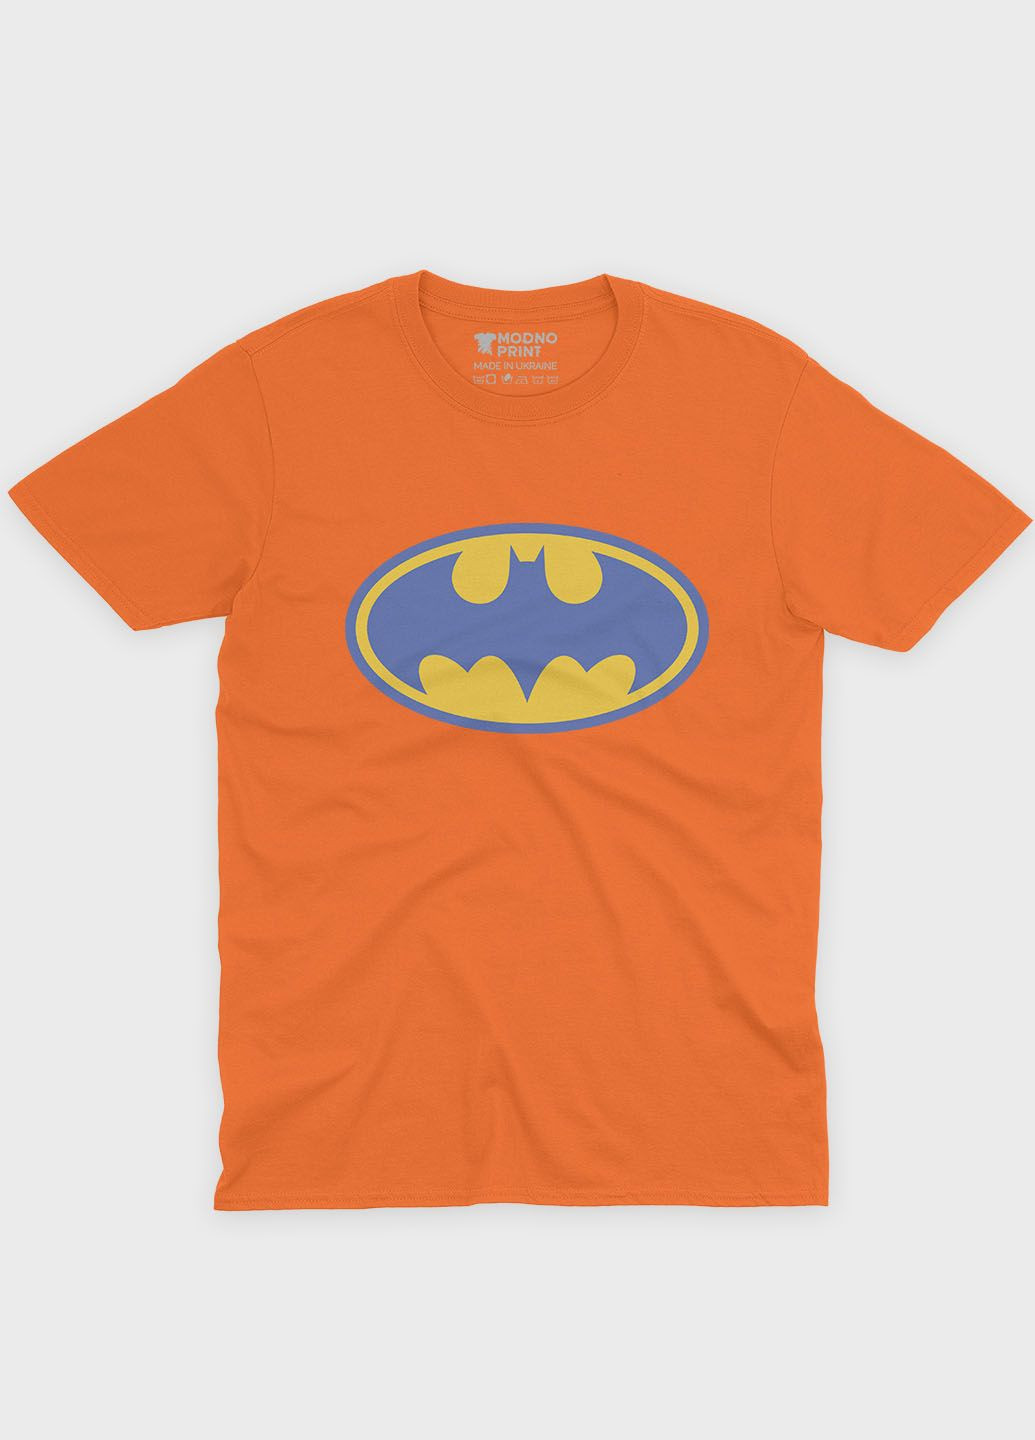 Оранжевая демисезонная футболка для мальчика с патриотическим принтом (ts001-3-ora-005-1-061-b) Modno